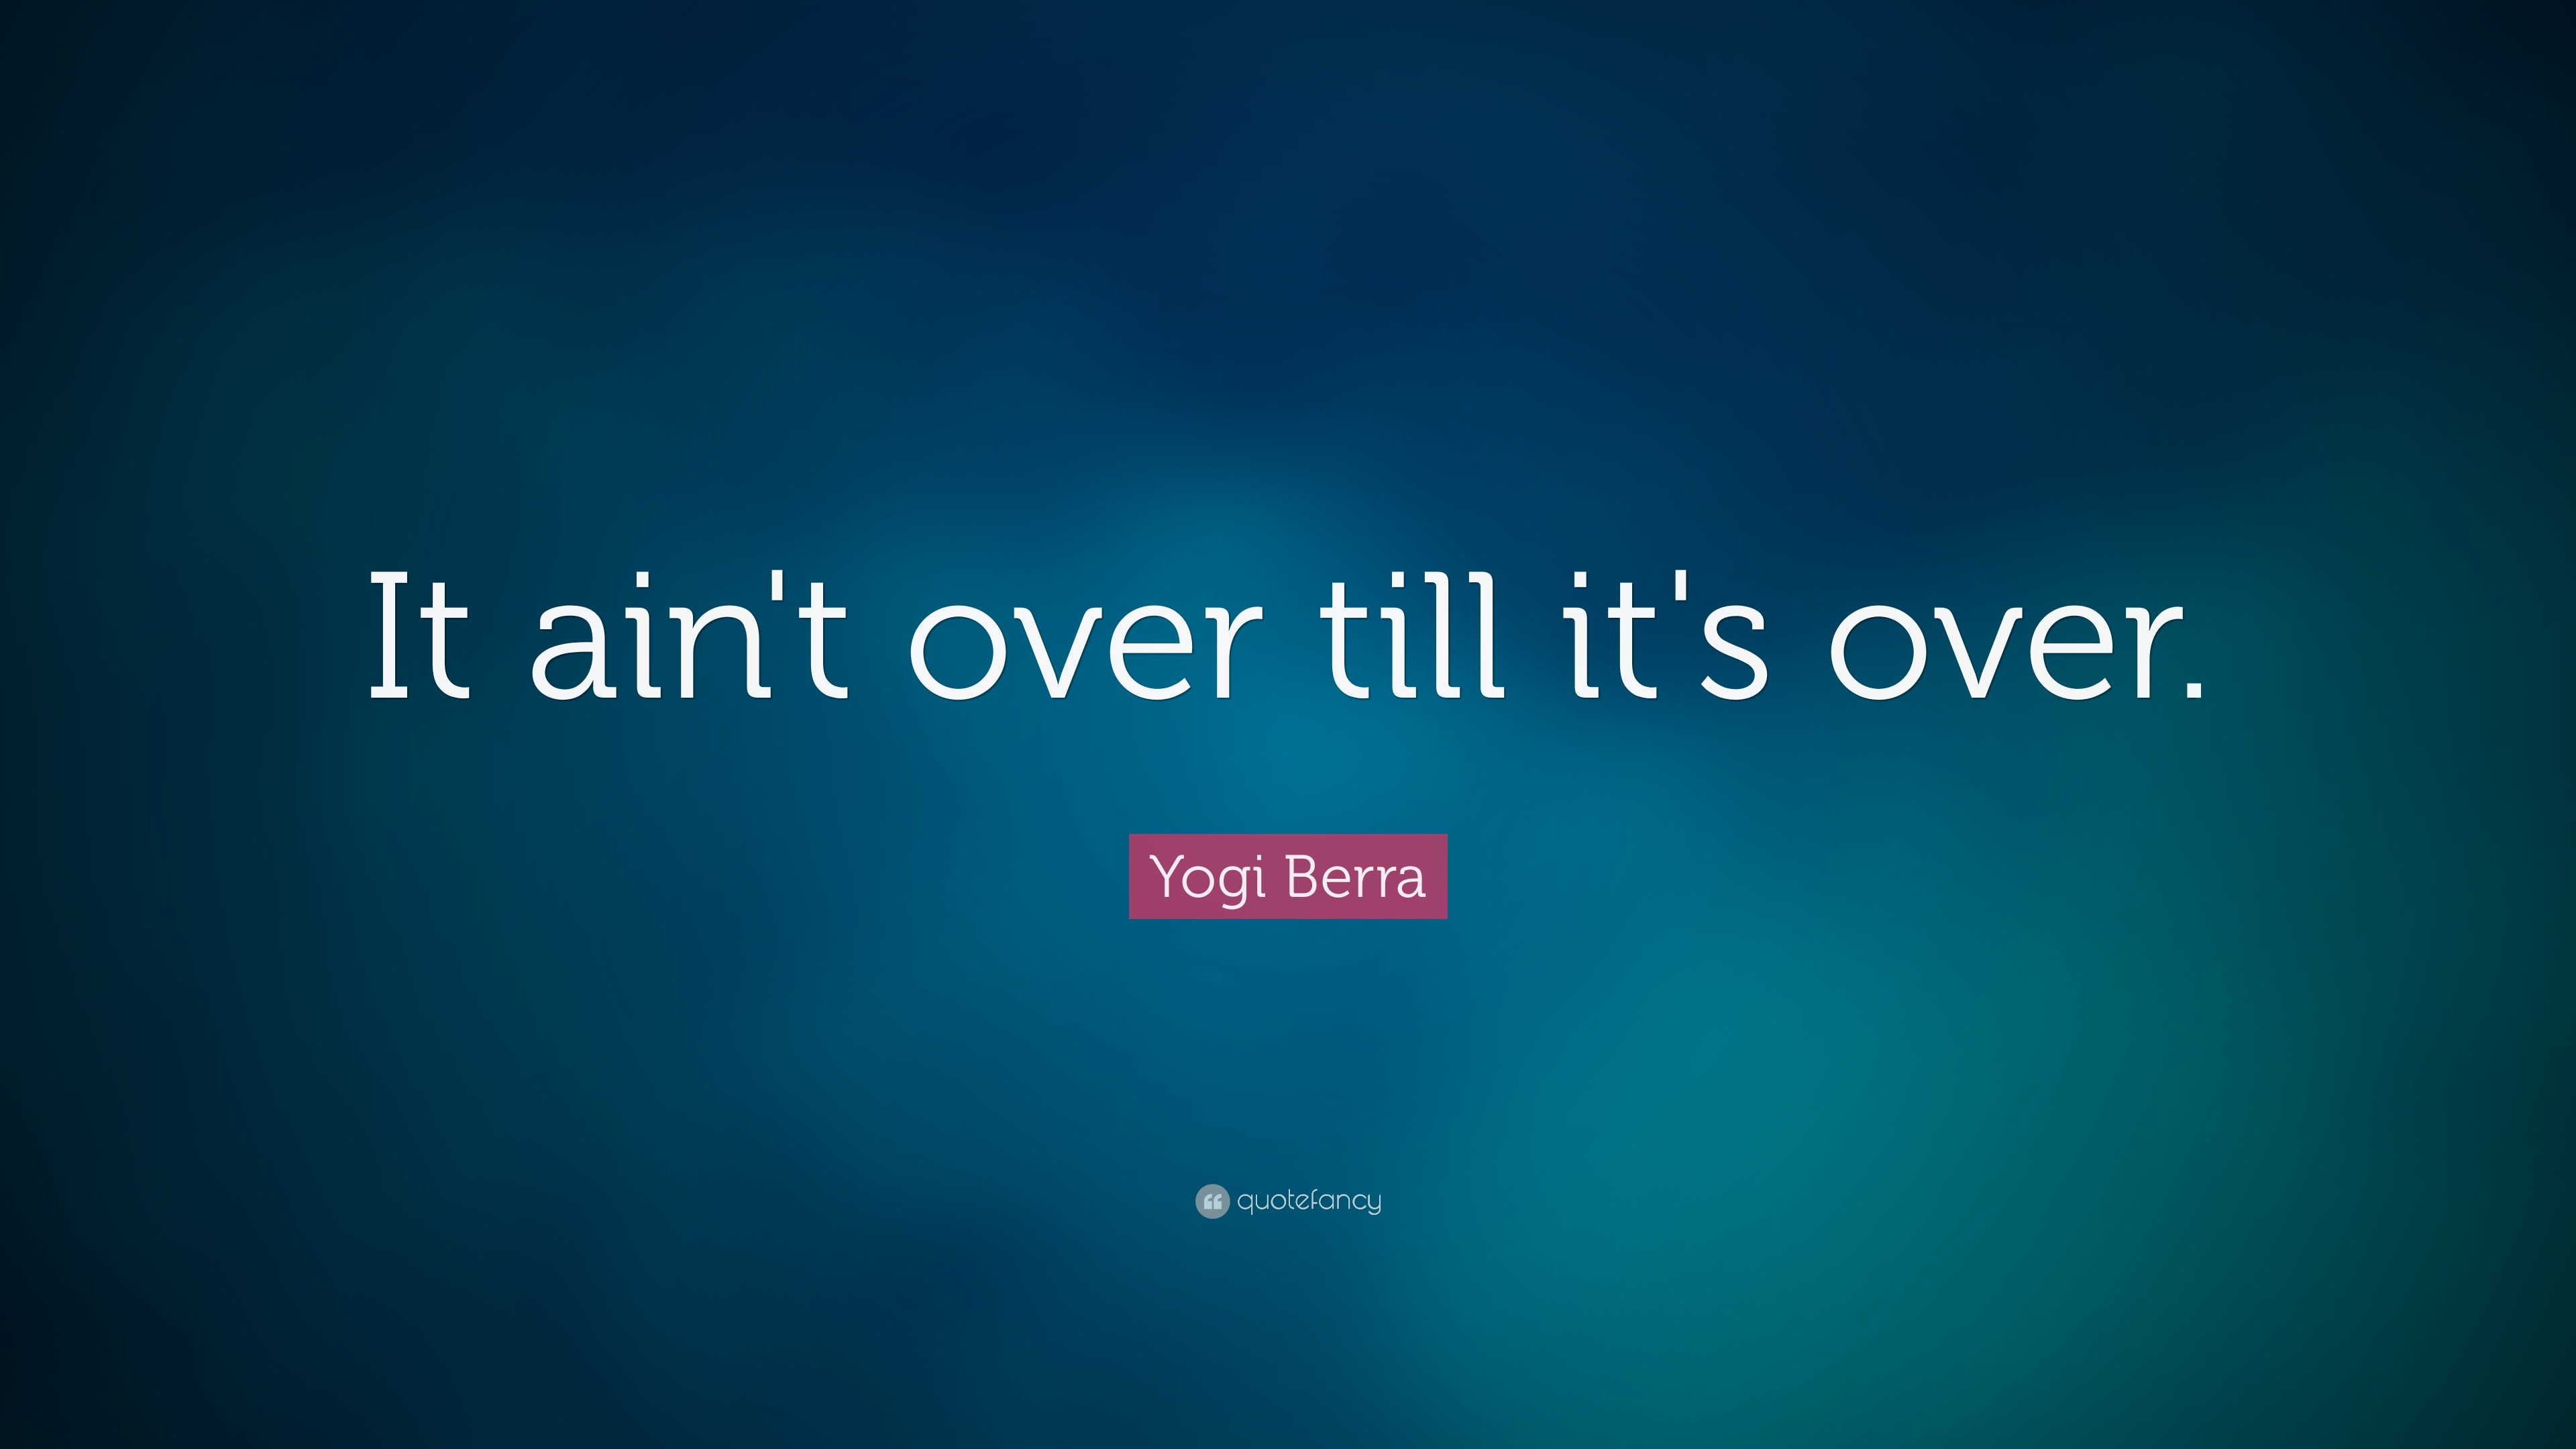 It ain't over 'til it's over.” ― Yogi Berra - Yogi Berra - Long